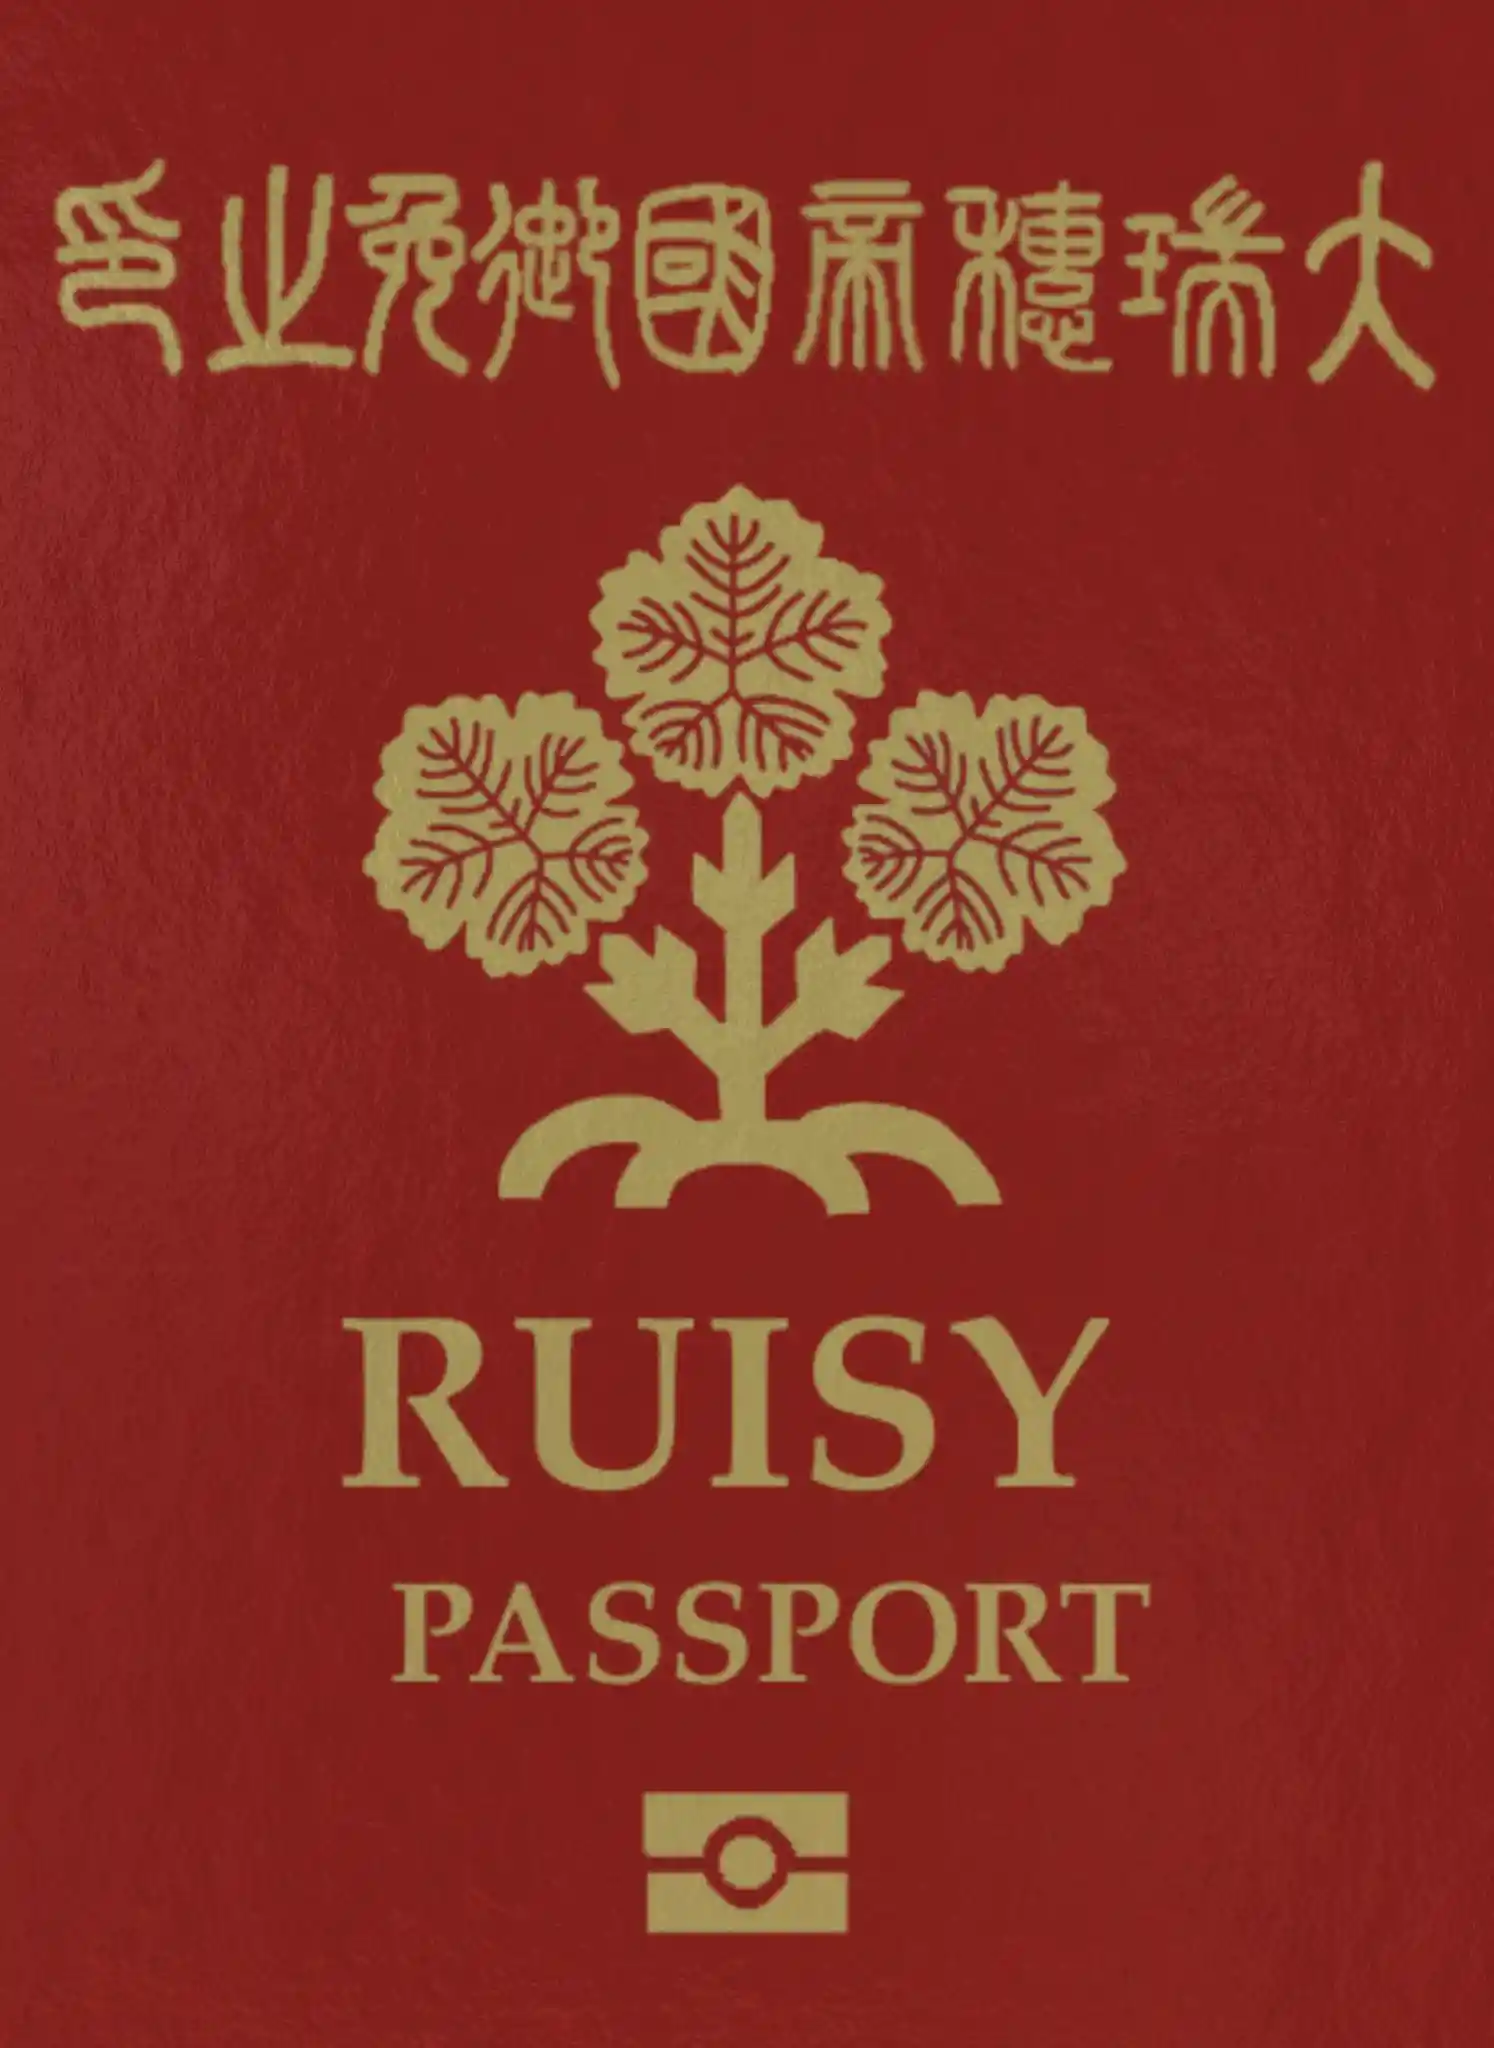 passport10.jpg